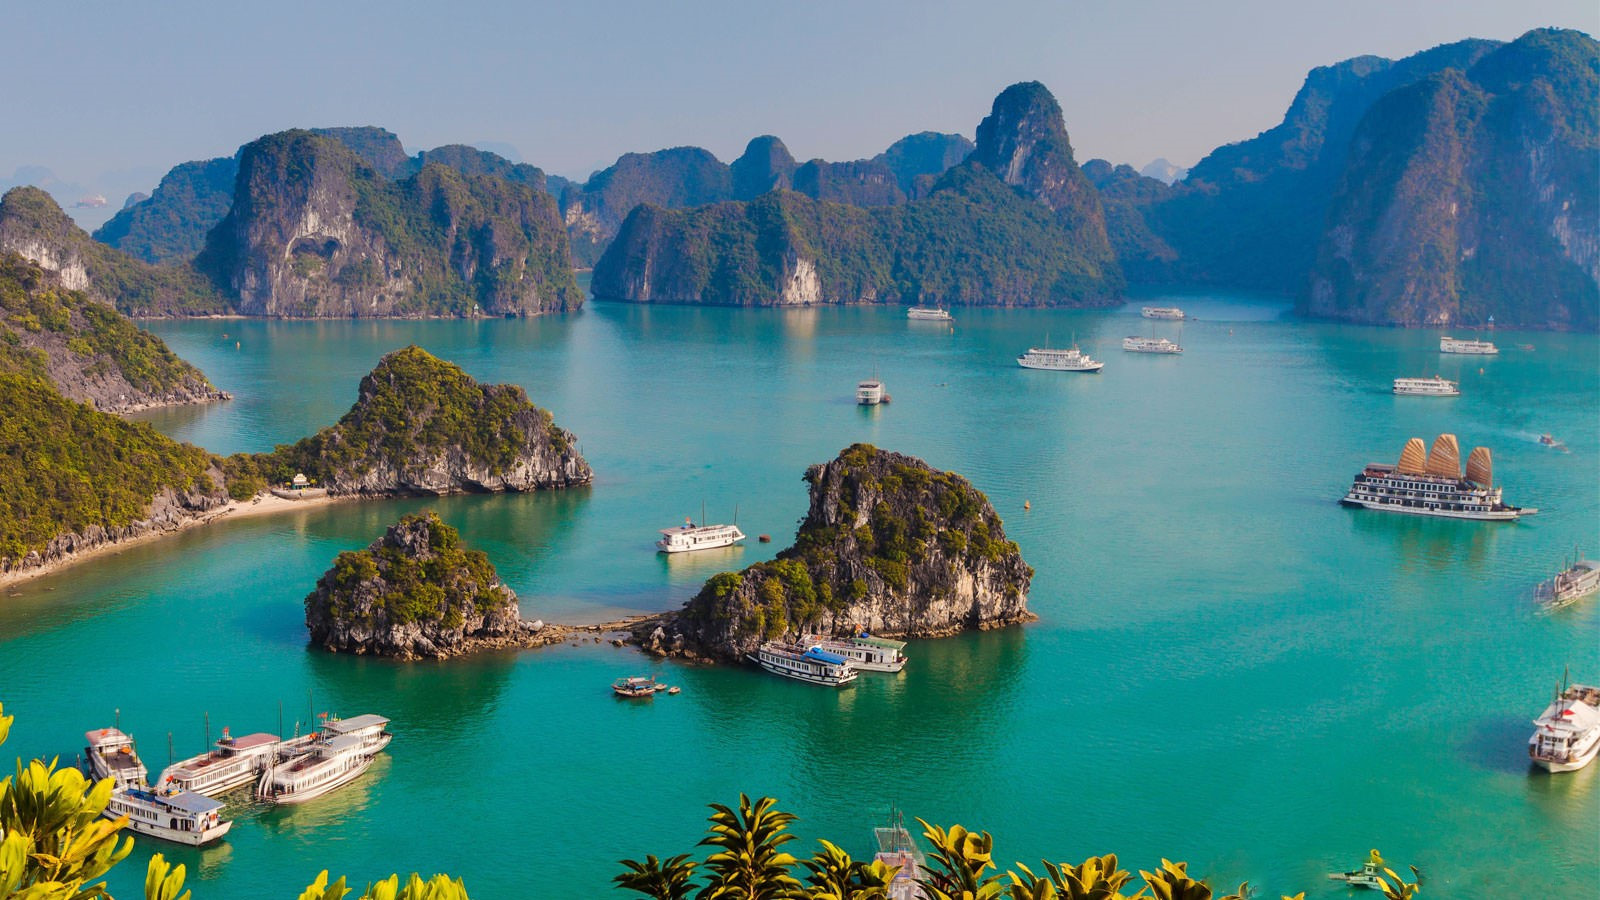 Vịnh Hạ Long, Việt Nam Vịnh Hạ Long là một trong những thắng cảnh thiên nhiên nổi tiếng nhất ở Đông Nam Á và là một trong những nơi đẹp nhất ở Việt Nam.  Với 1.969 hòn đảo nhỏ bằng đá vôi khổng lồ và vùng nước sâu, trong xanh, nơi có vô số ngôi làng nổi, đây là nơi mà thời gian như ngừng trôi.